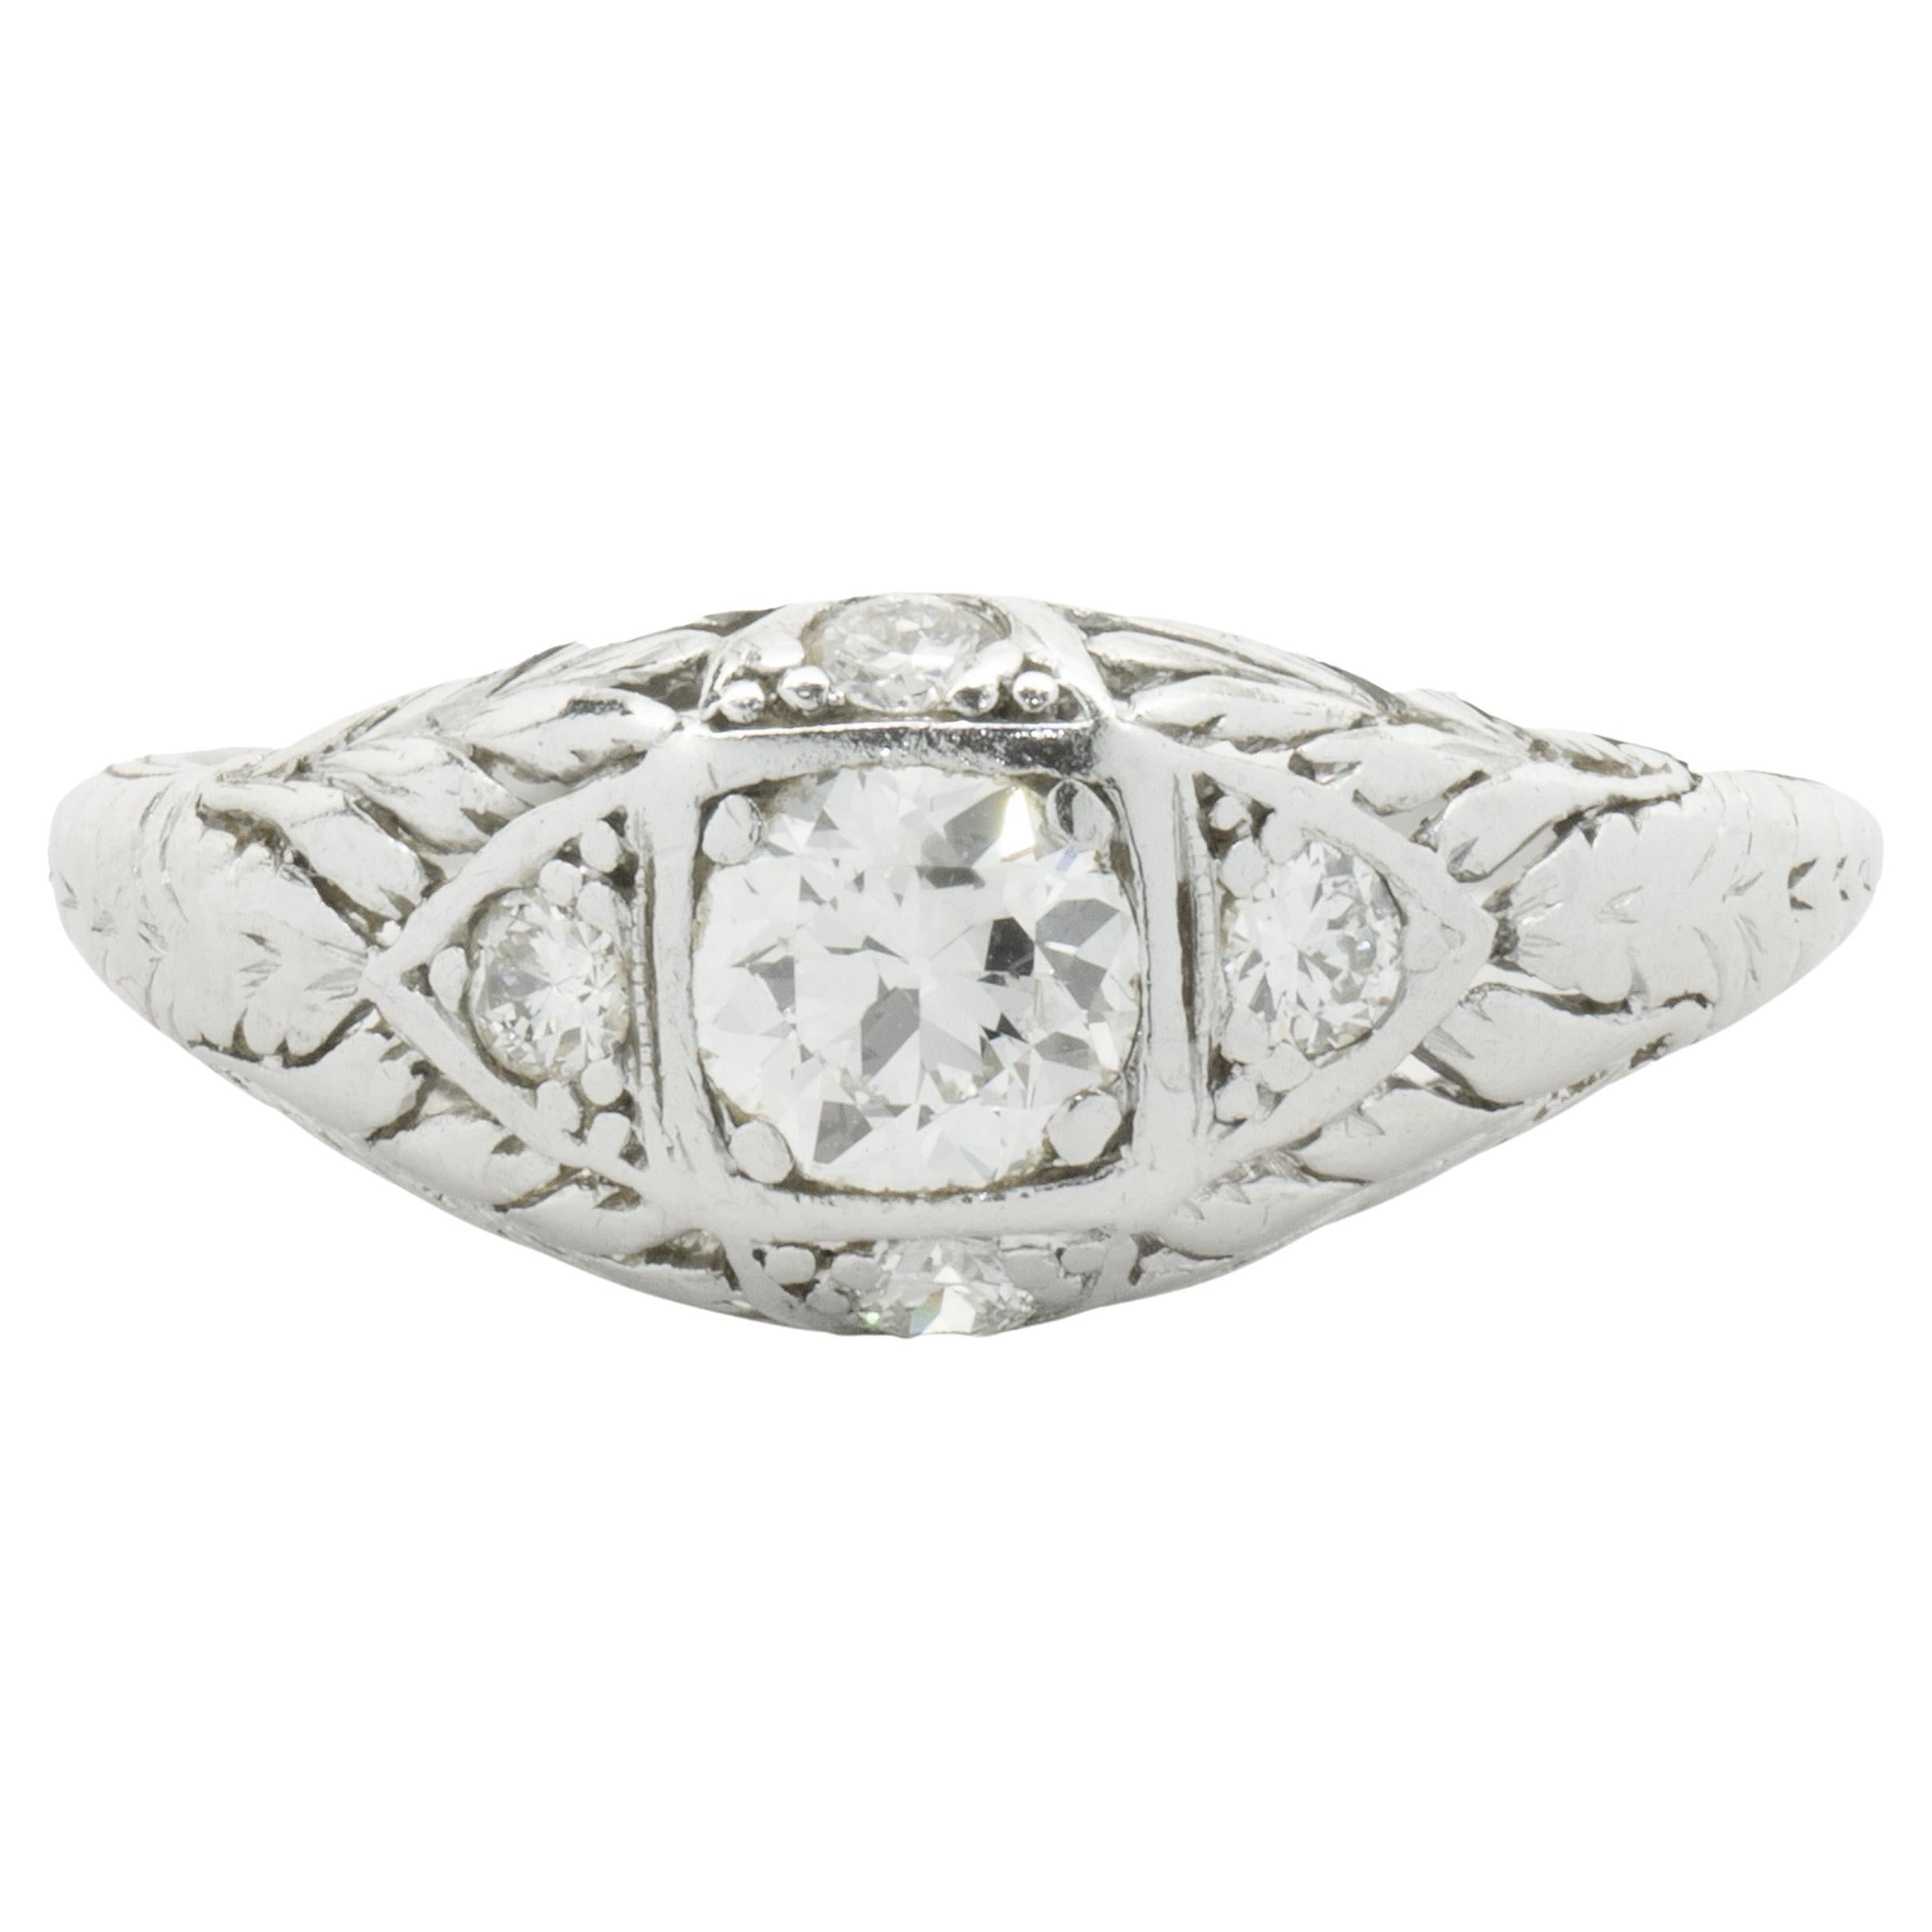 Platinum Round European Cut Diamond Engagement Ring